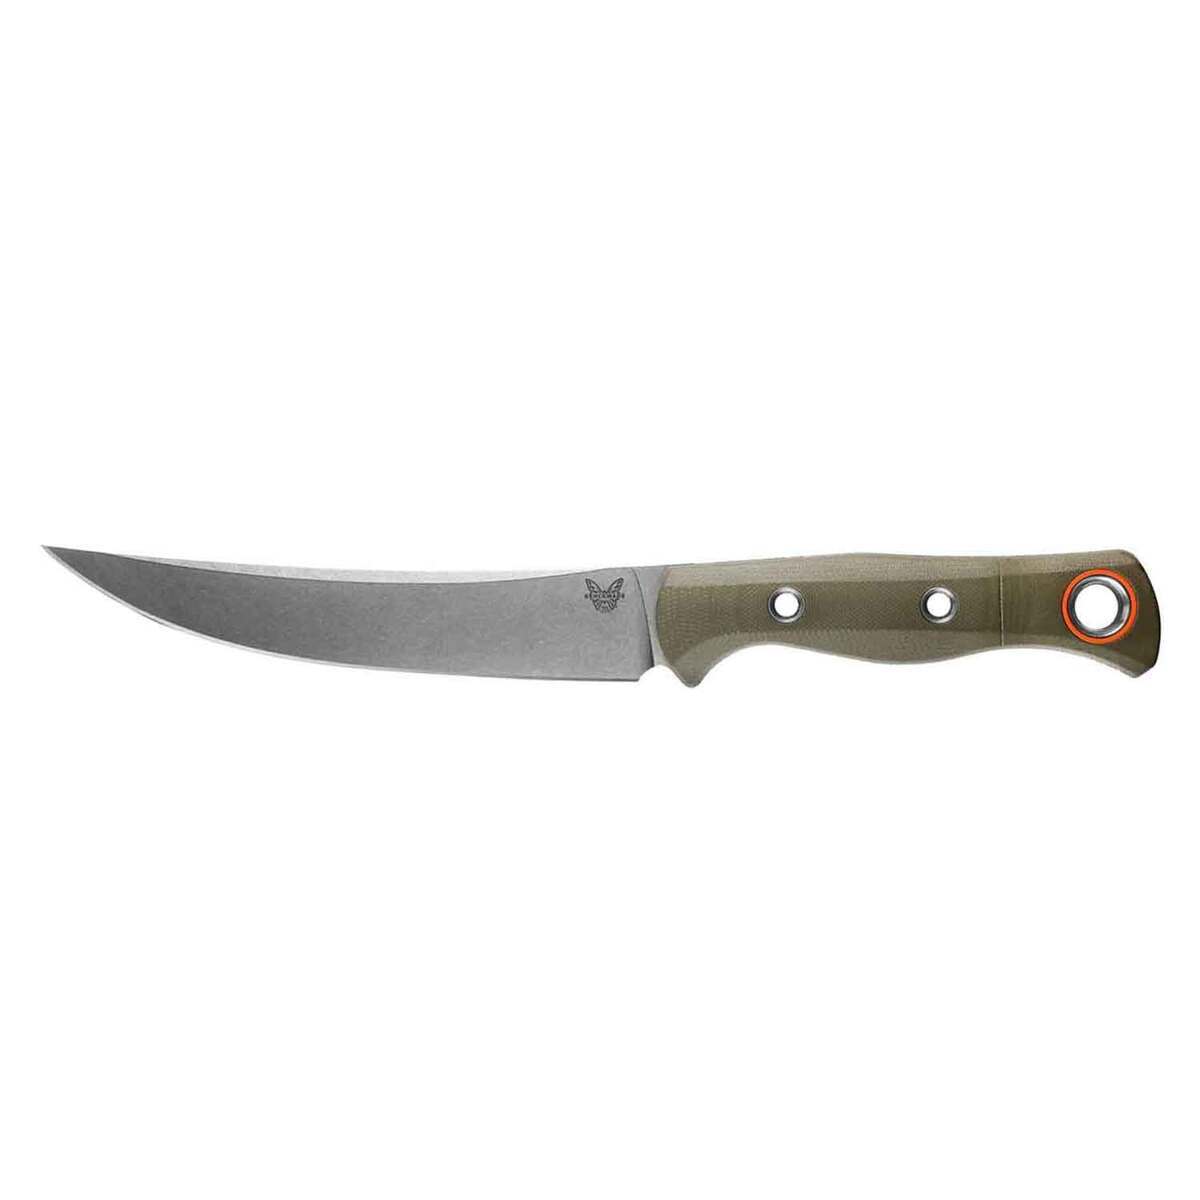 https://www.sportsmans.com/medias/benchmade-meatcrafter-608-inch-fixed-blade-knife-1720992-1.jpg?context=bWFzdGVyfGltYWdlc3wyMjQzMHxpbWFnZS9qcGVnfGg4MC9oYzMvMTE3MzAwNzE2MTc1NjYvMTIwMC1jb252ZXJzaW9uRm9ybWF0X2Jhc2UtY29udmVyc2lvbkZvcm1hdF9zbXctMTcyMDk5Mi0xLmpwZ3w0ZTIwOGQxZjMxMTFkNDNiZjE0YTRlYzc3MzUxMWQxMTYxNDJjNmM1OGNlNWNiNjkwMzYxZjI3M2NiYTVkMGIw